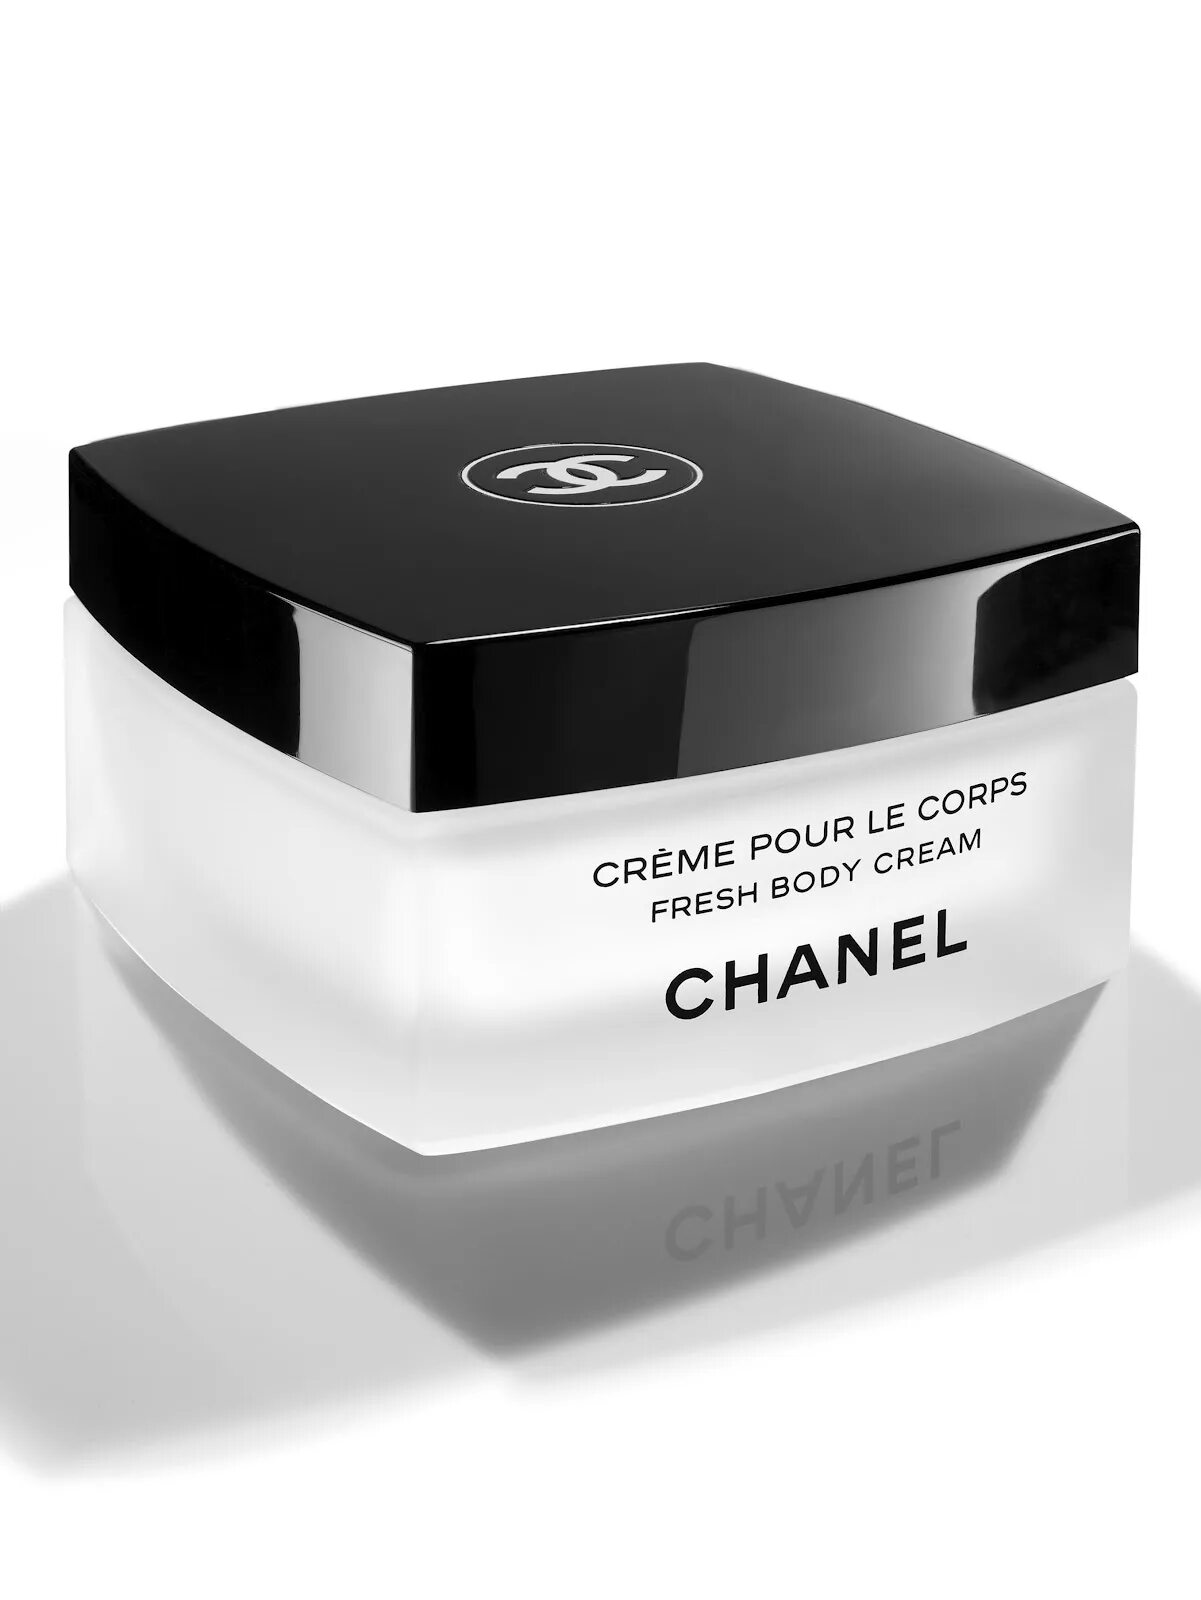 Купить крем шанель. Крем Шанель Creme pour le Corps. Крем Chanel body. Крем Коко Шанель для лица. Крем фрэш для тела Шанель 150.